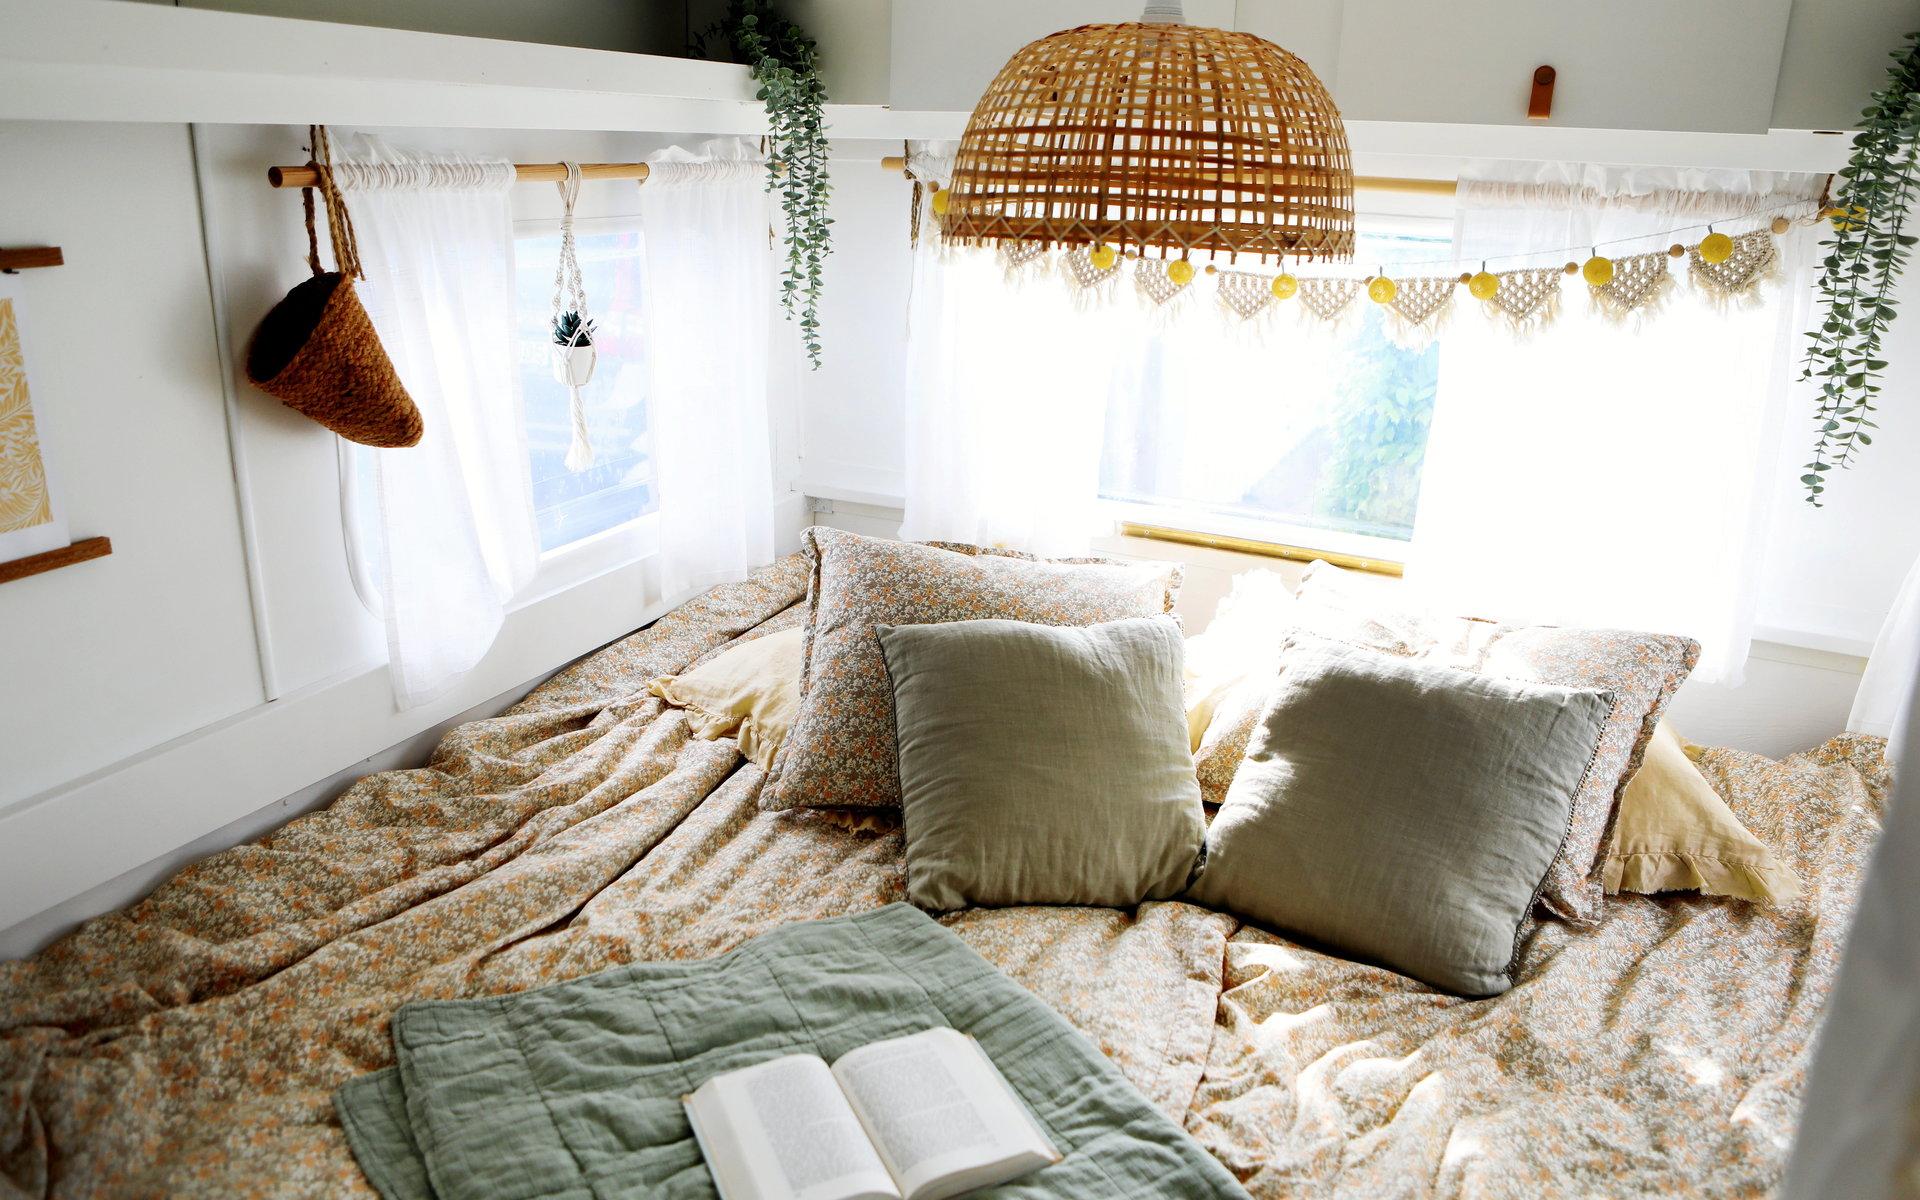 Lampan över sängen matchar naturfärgerna i mattor och textilier.